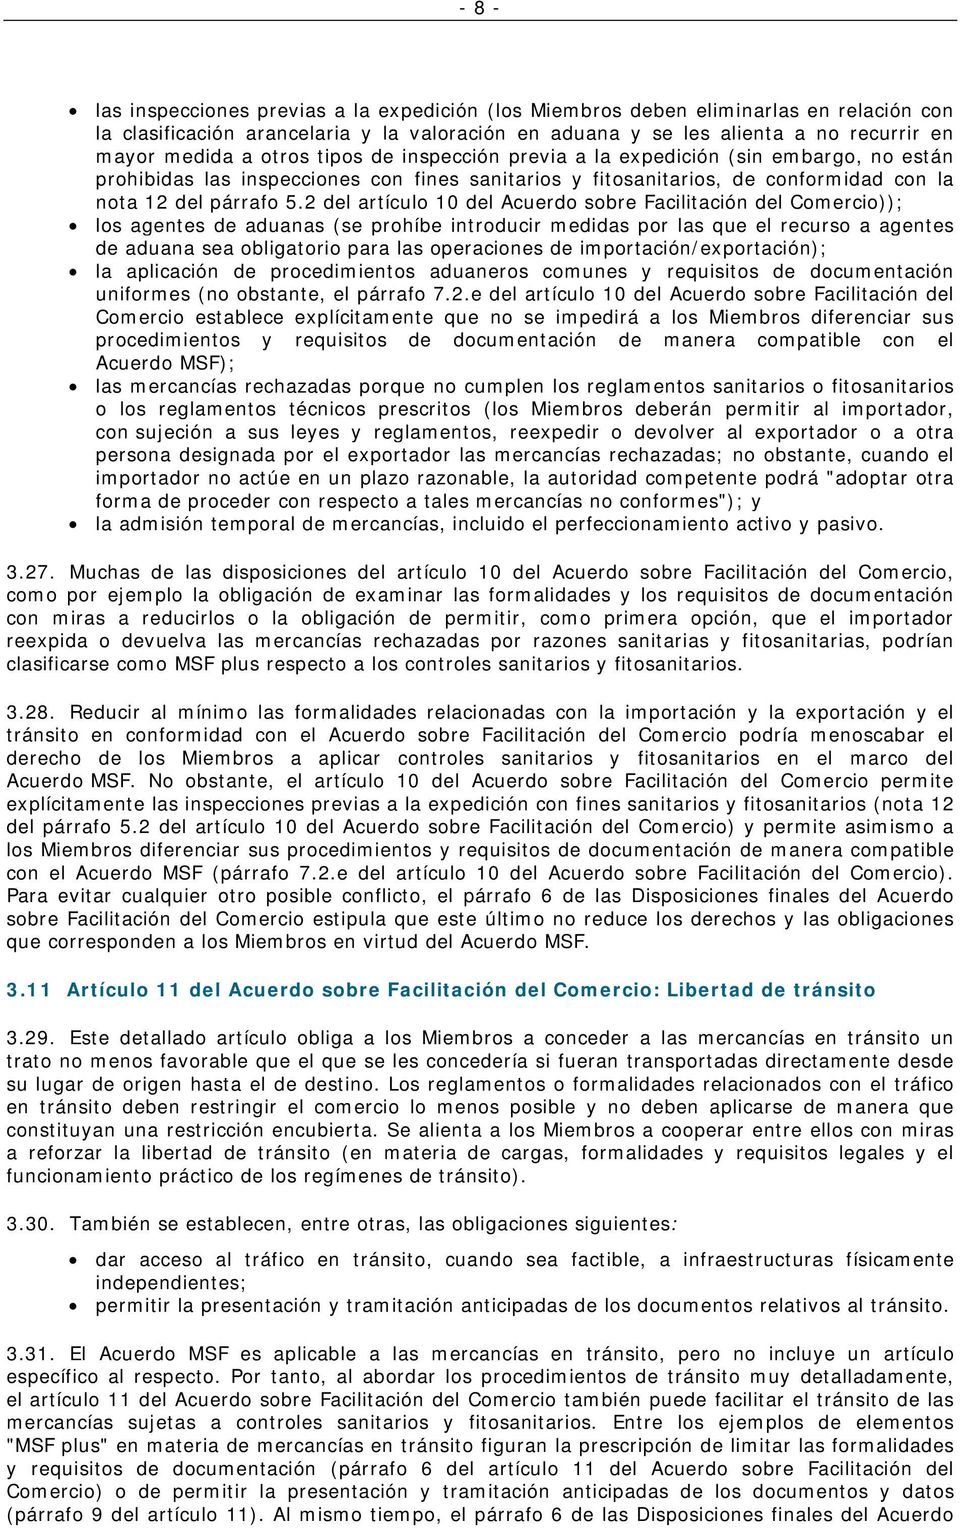 2 del artículo 10 del Acuerdo sobre Facilitación del Comercio)); los agentes de aduanas (se prohíbe introducir medidas por las que el recurso a agentes de aduana sea obligatorio para las operaciones